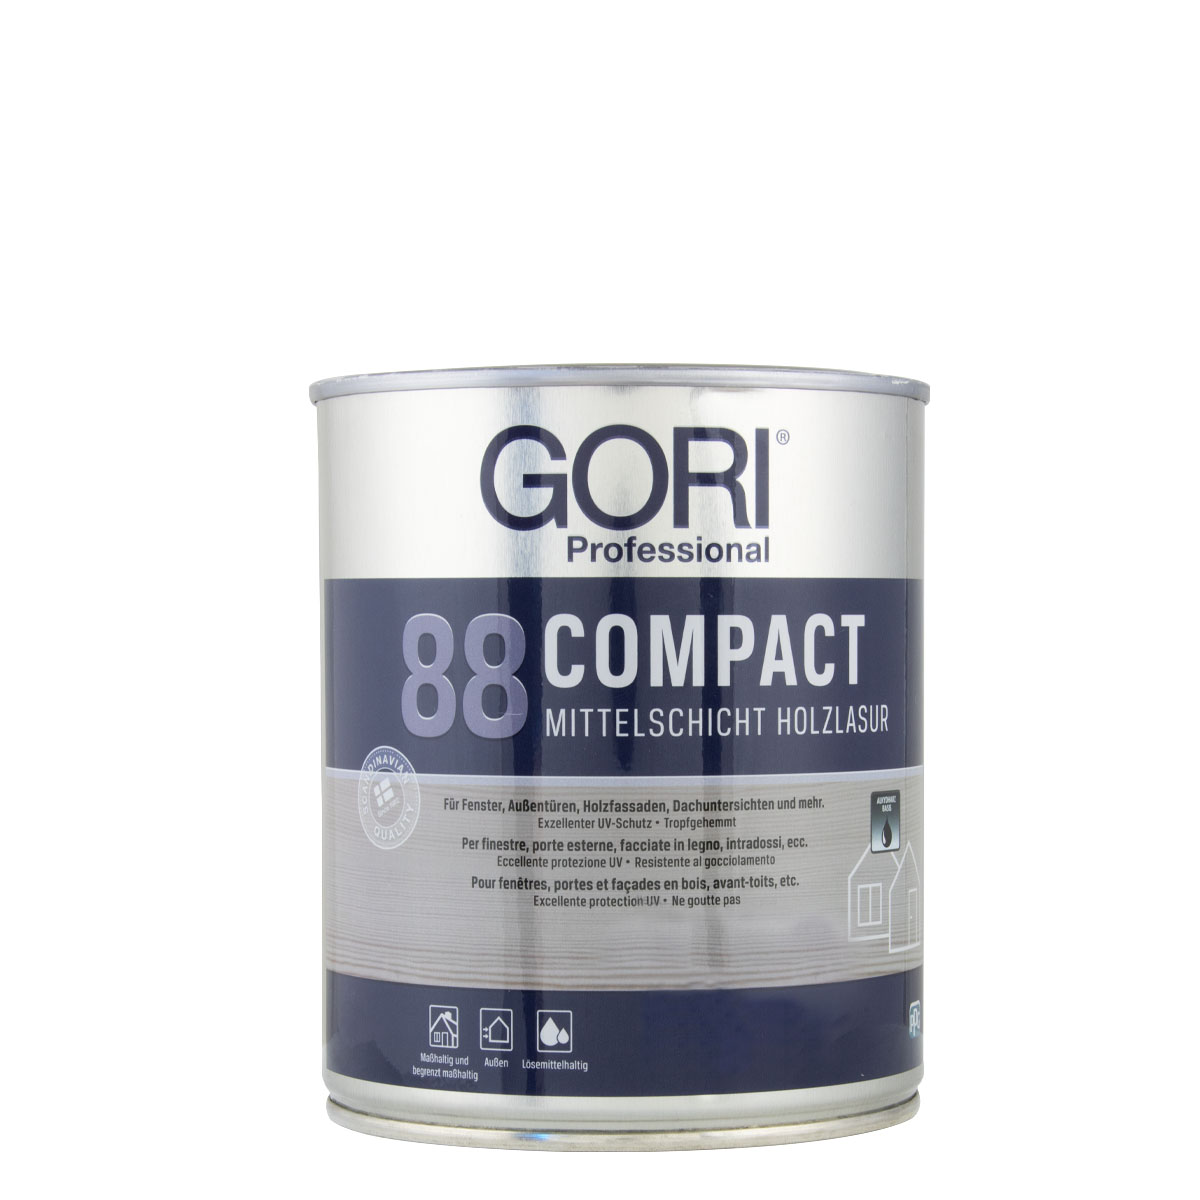 Gori_88_compact_750ml_gross